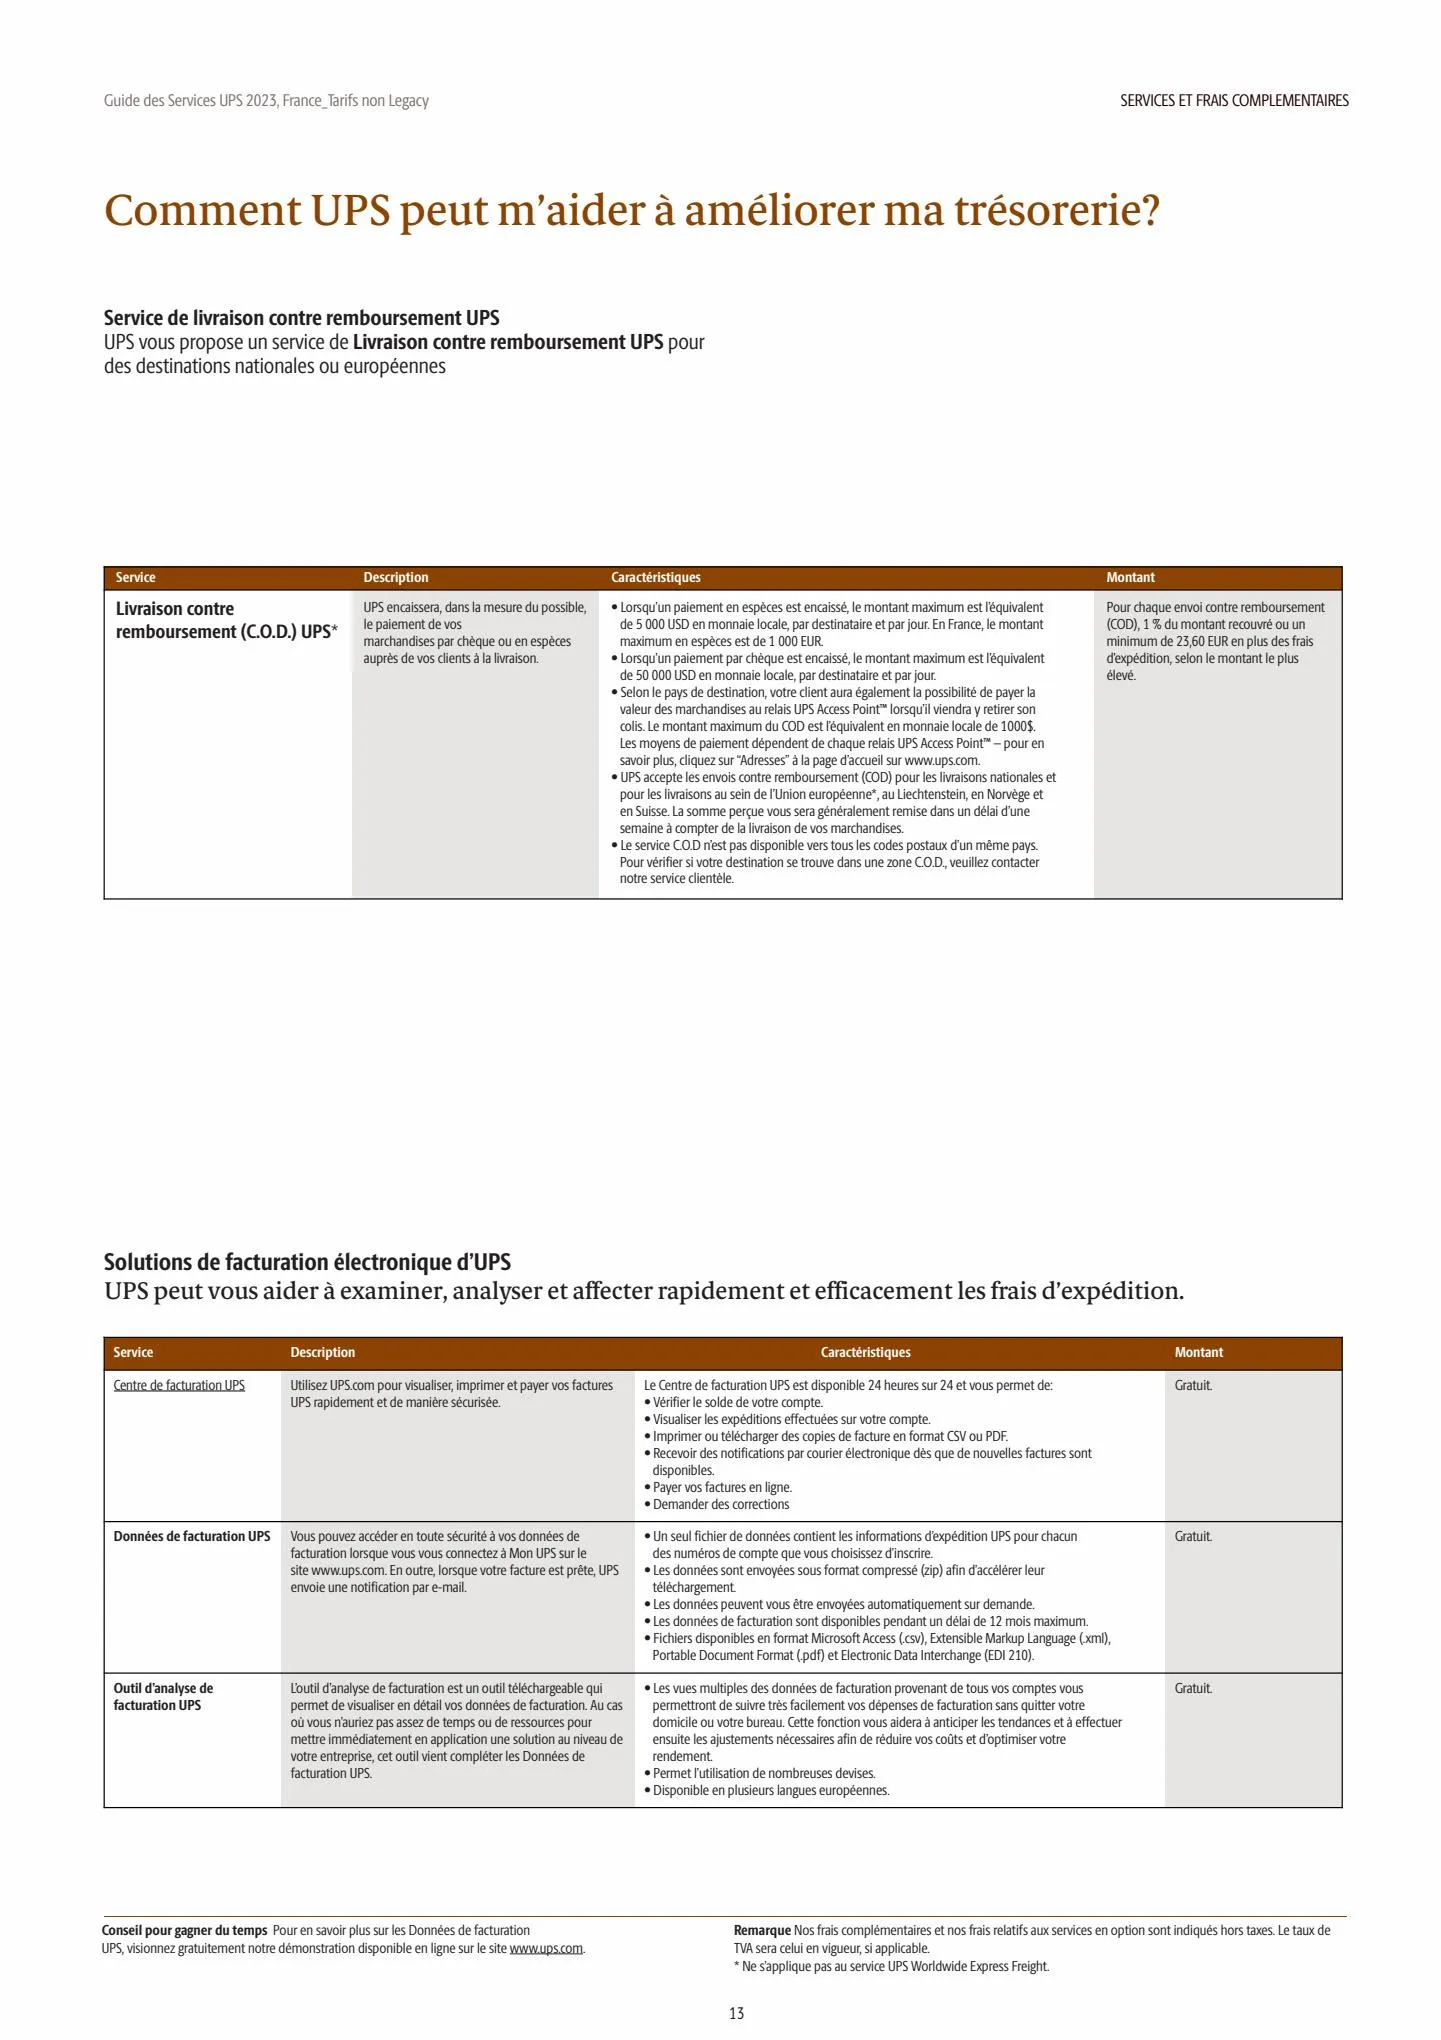 Catalogue Guide des Services 2023, page 00013